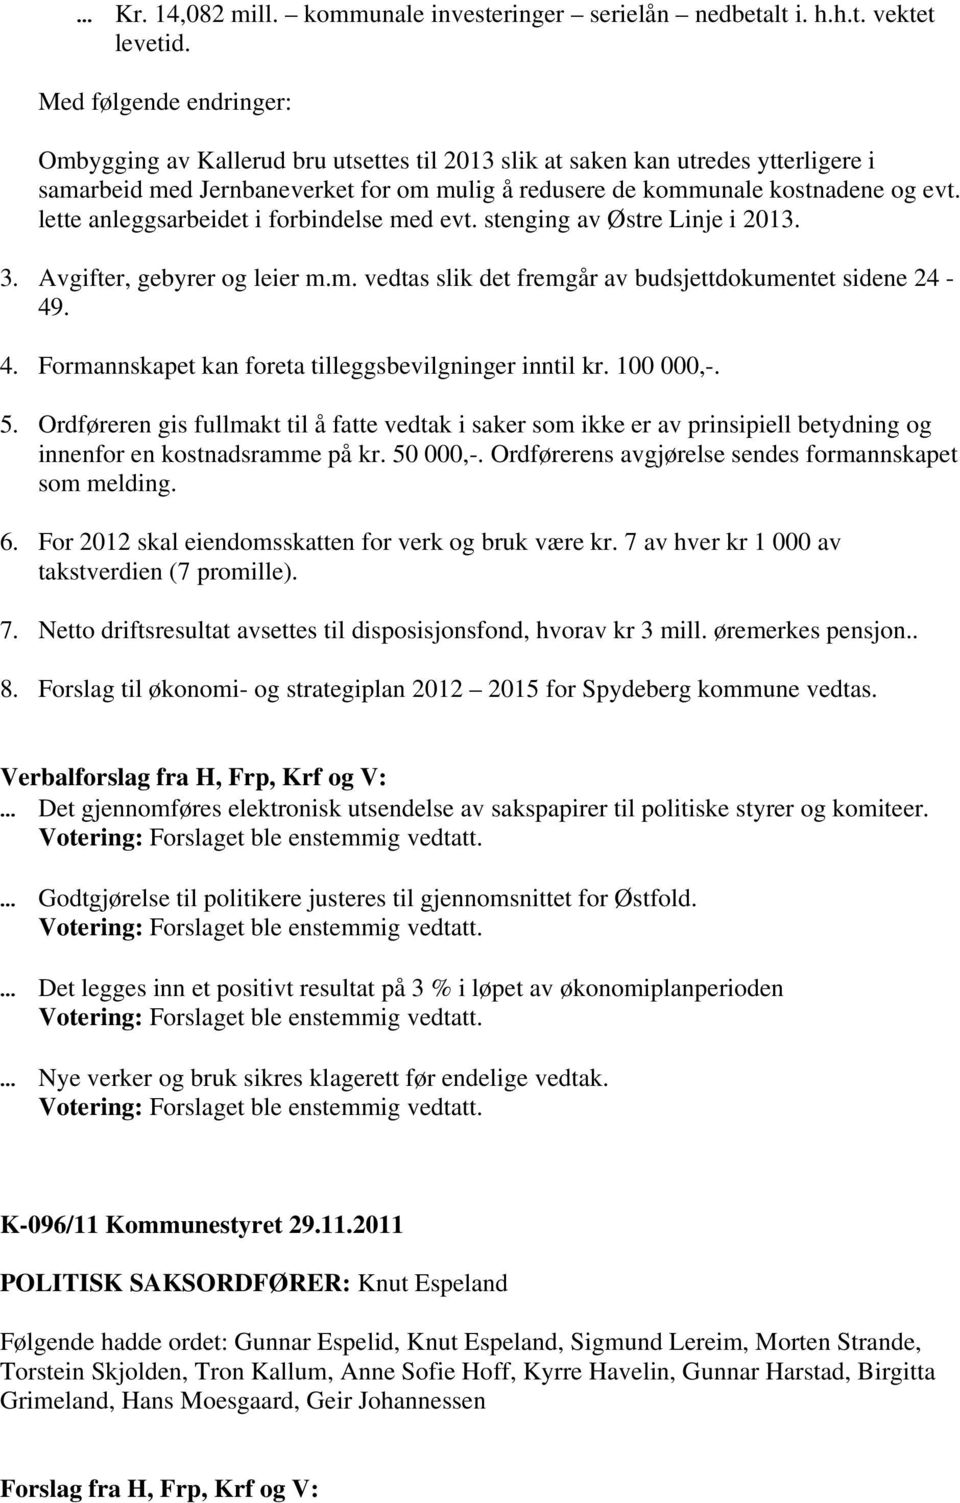 lette anleggsarbeidet i forbindelse med evt. stenging av Østre Linje i 2013. 3. Avgifter, gebyrer og leier m.m. vedtas slik det fremgår av budsjettdokumentet sidene 24-49. 4.